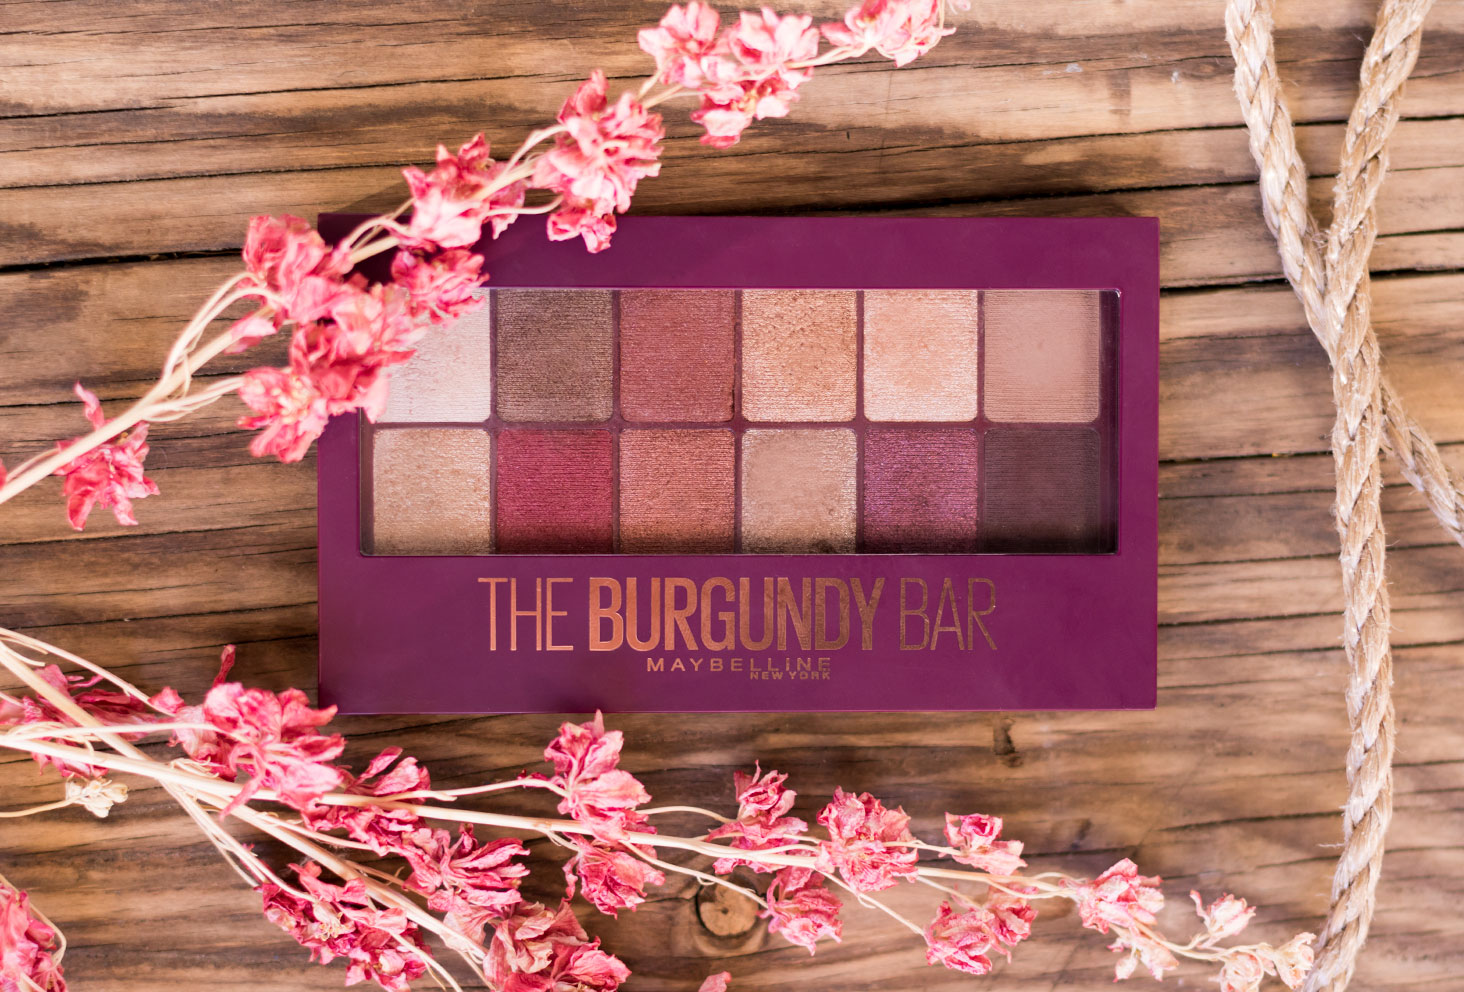 La palette The Burgundy Bar de haut fermée, sur une table en bois, au milieu de cordages et de fleurs sèches roses